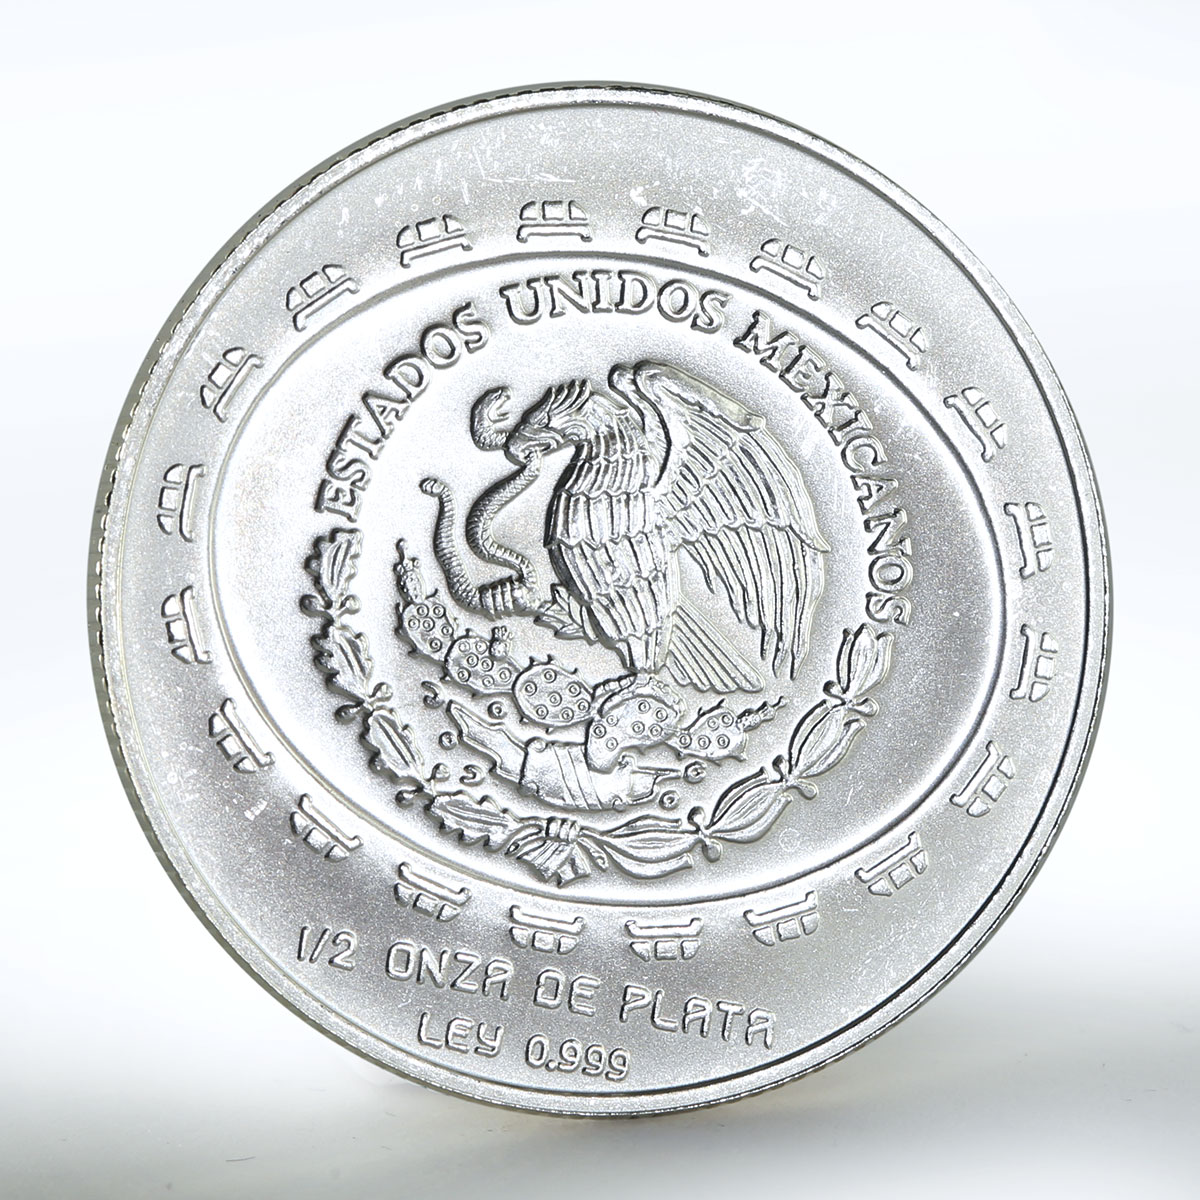 Mexico 2 pesos Disc of Death silver coin 1998